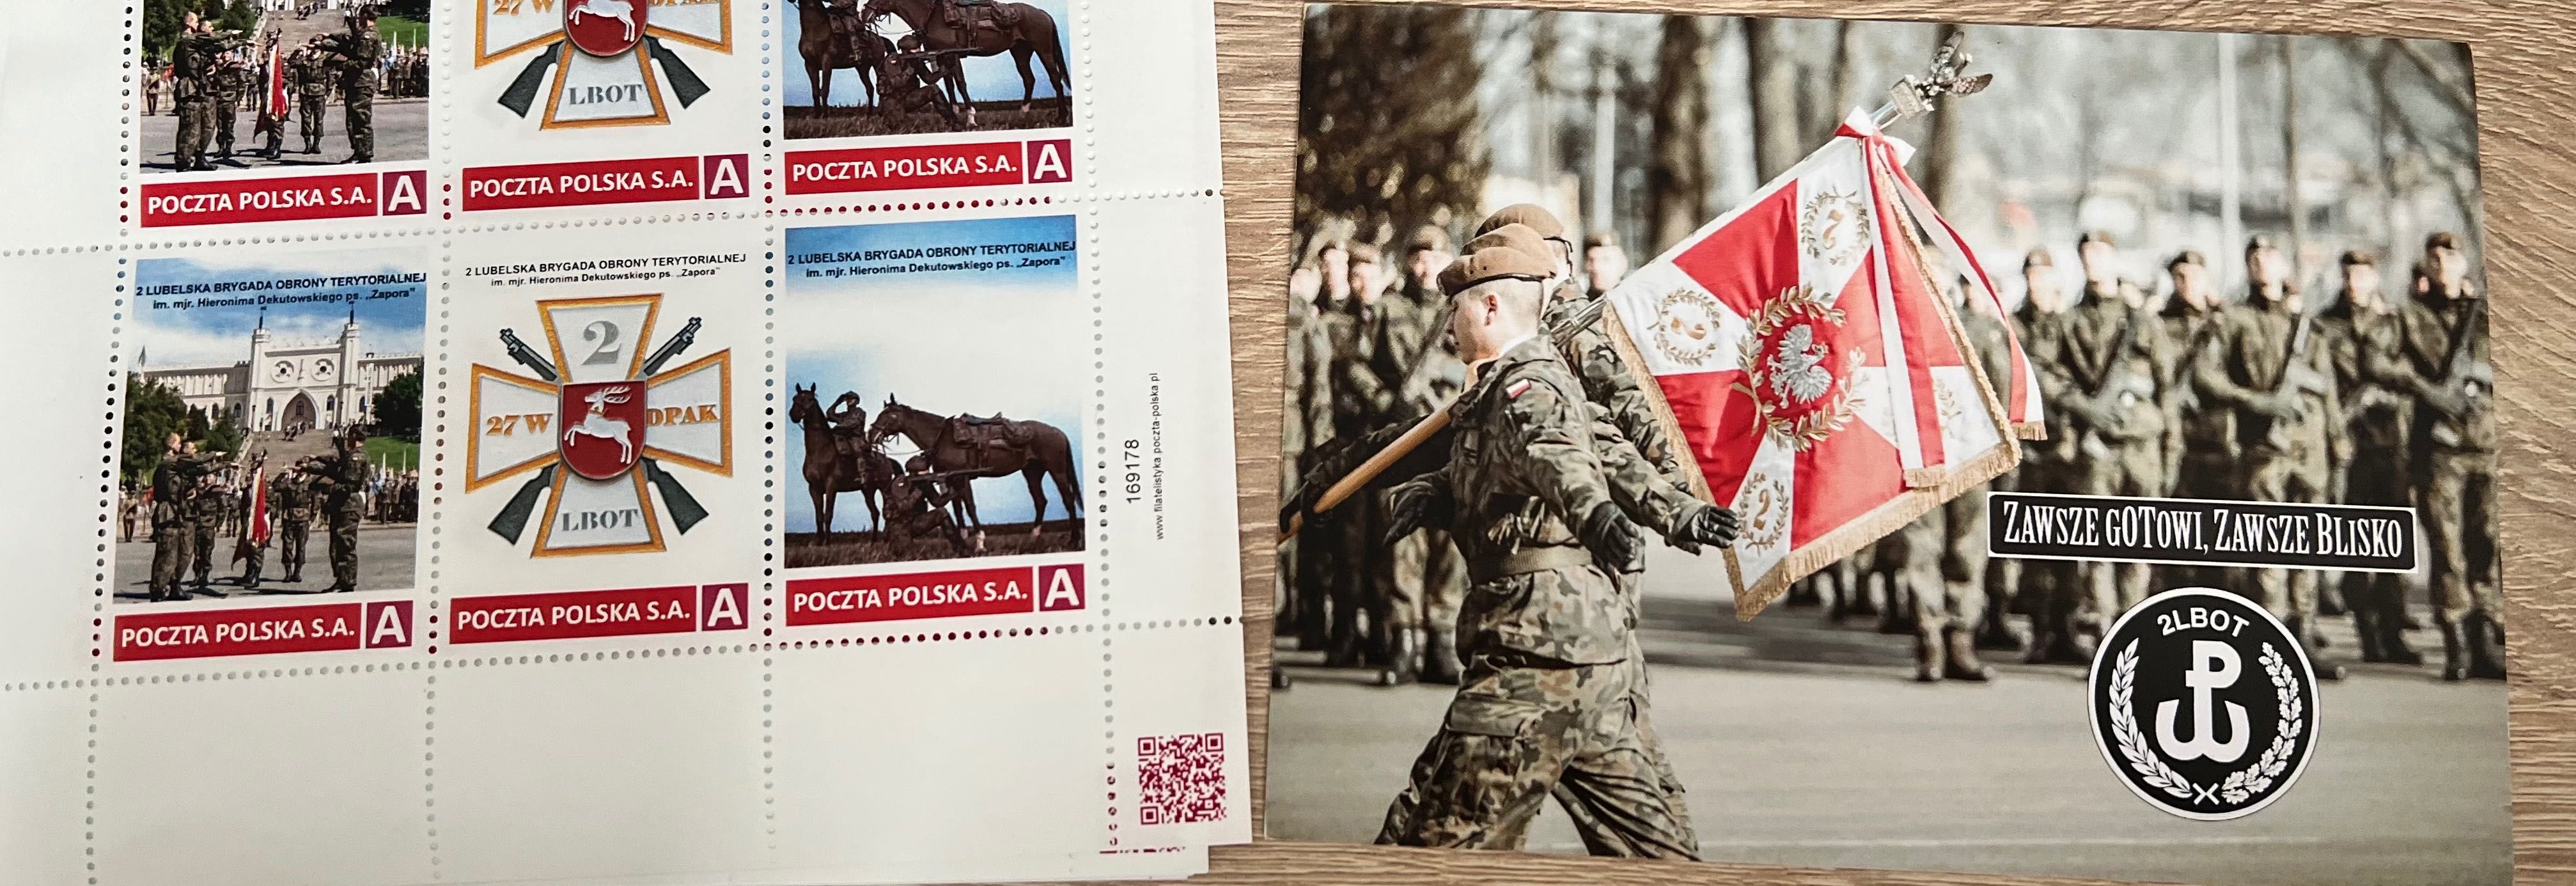 Unikat zestaw 3 znaczków + pocztówka - 2 LBOT / wojsko